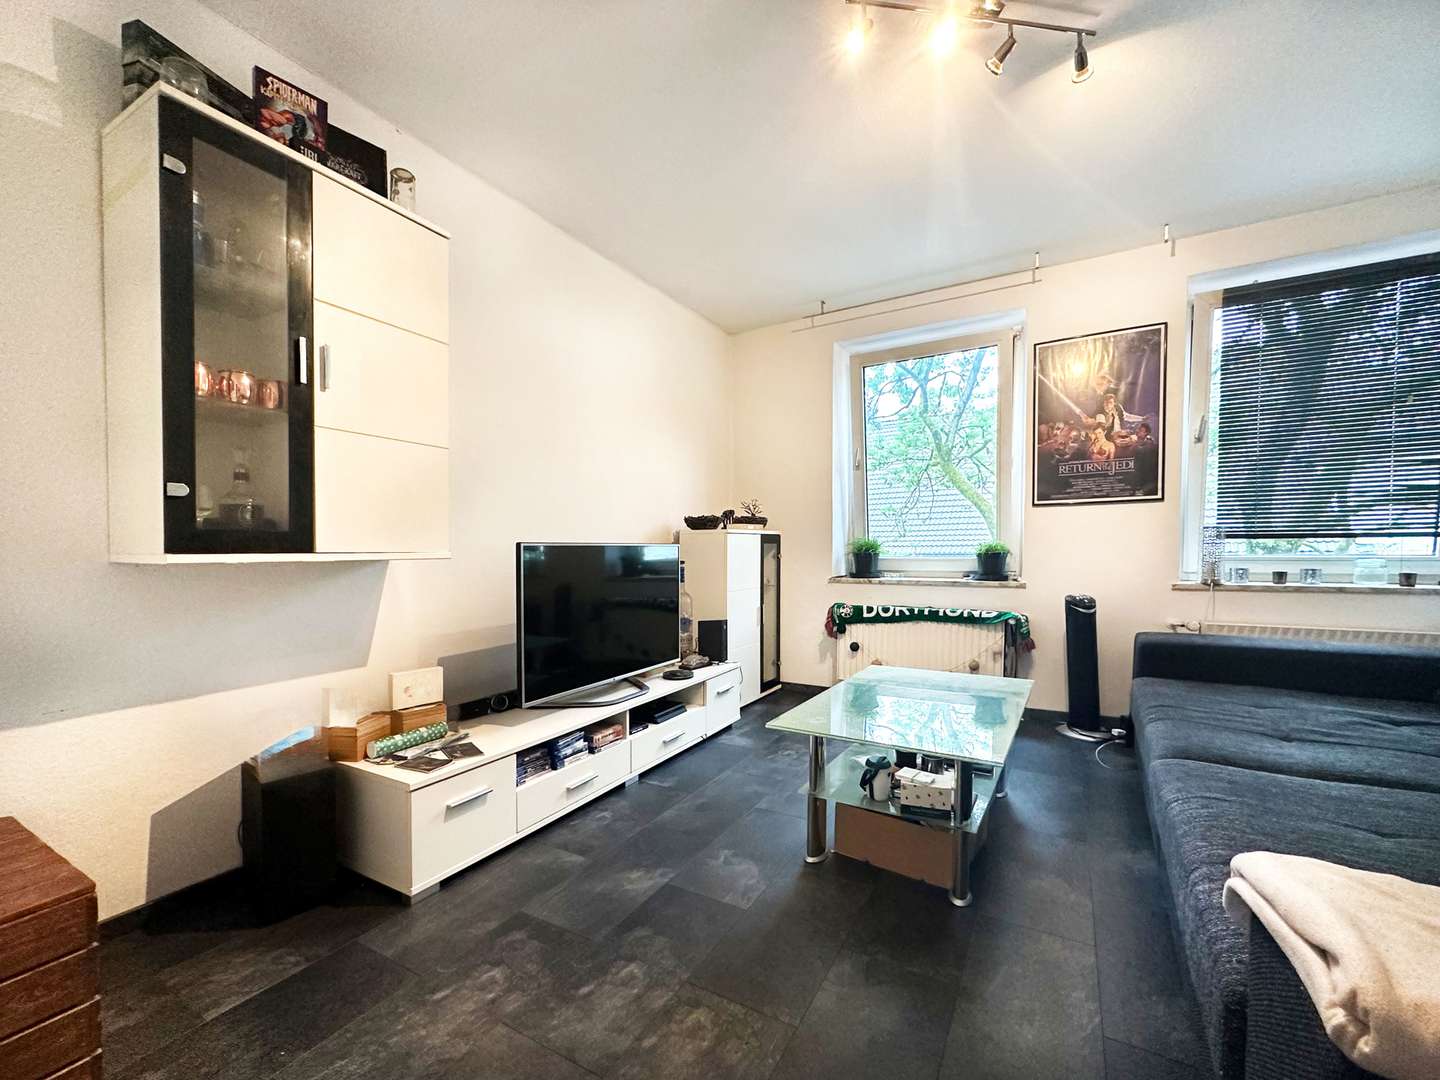 Wohnzimmer - Etagenwohnung in 44791 Bochum mit 62m² kaufen